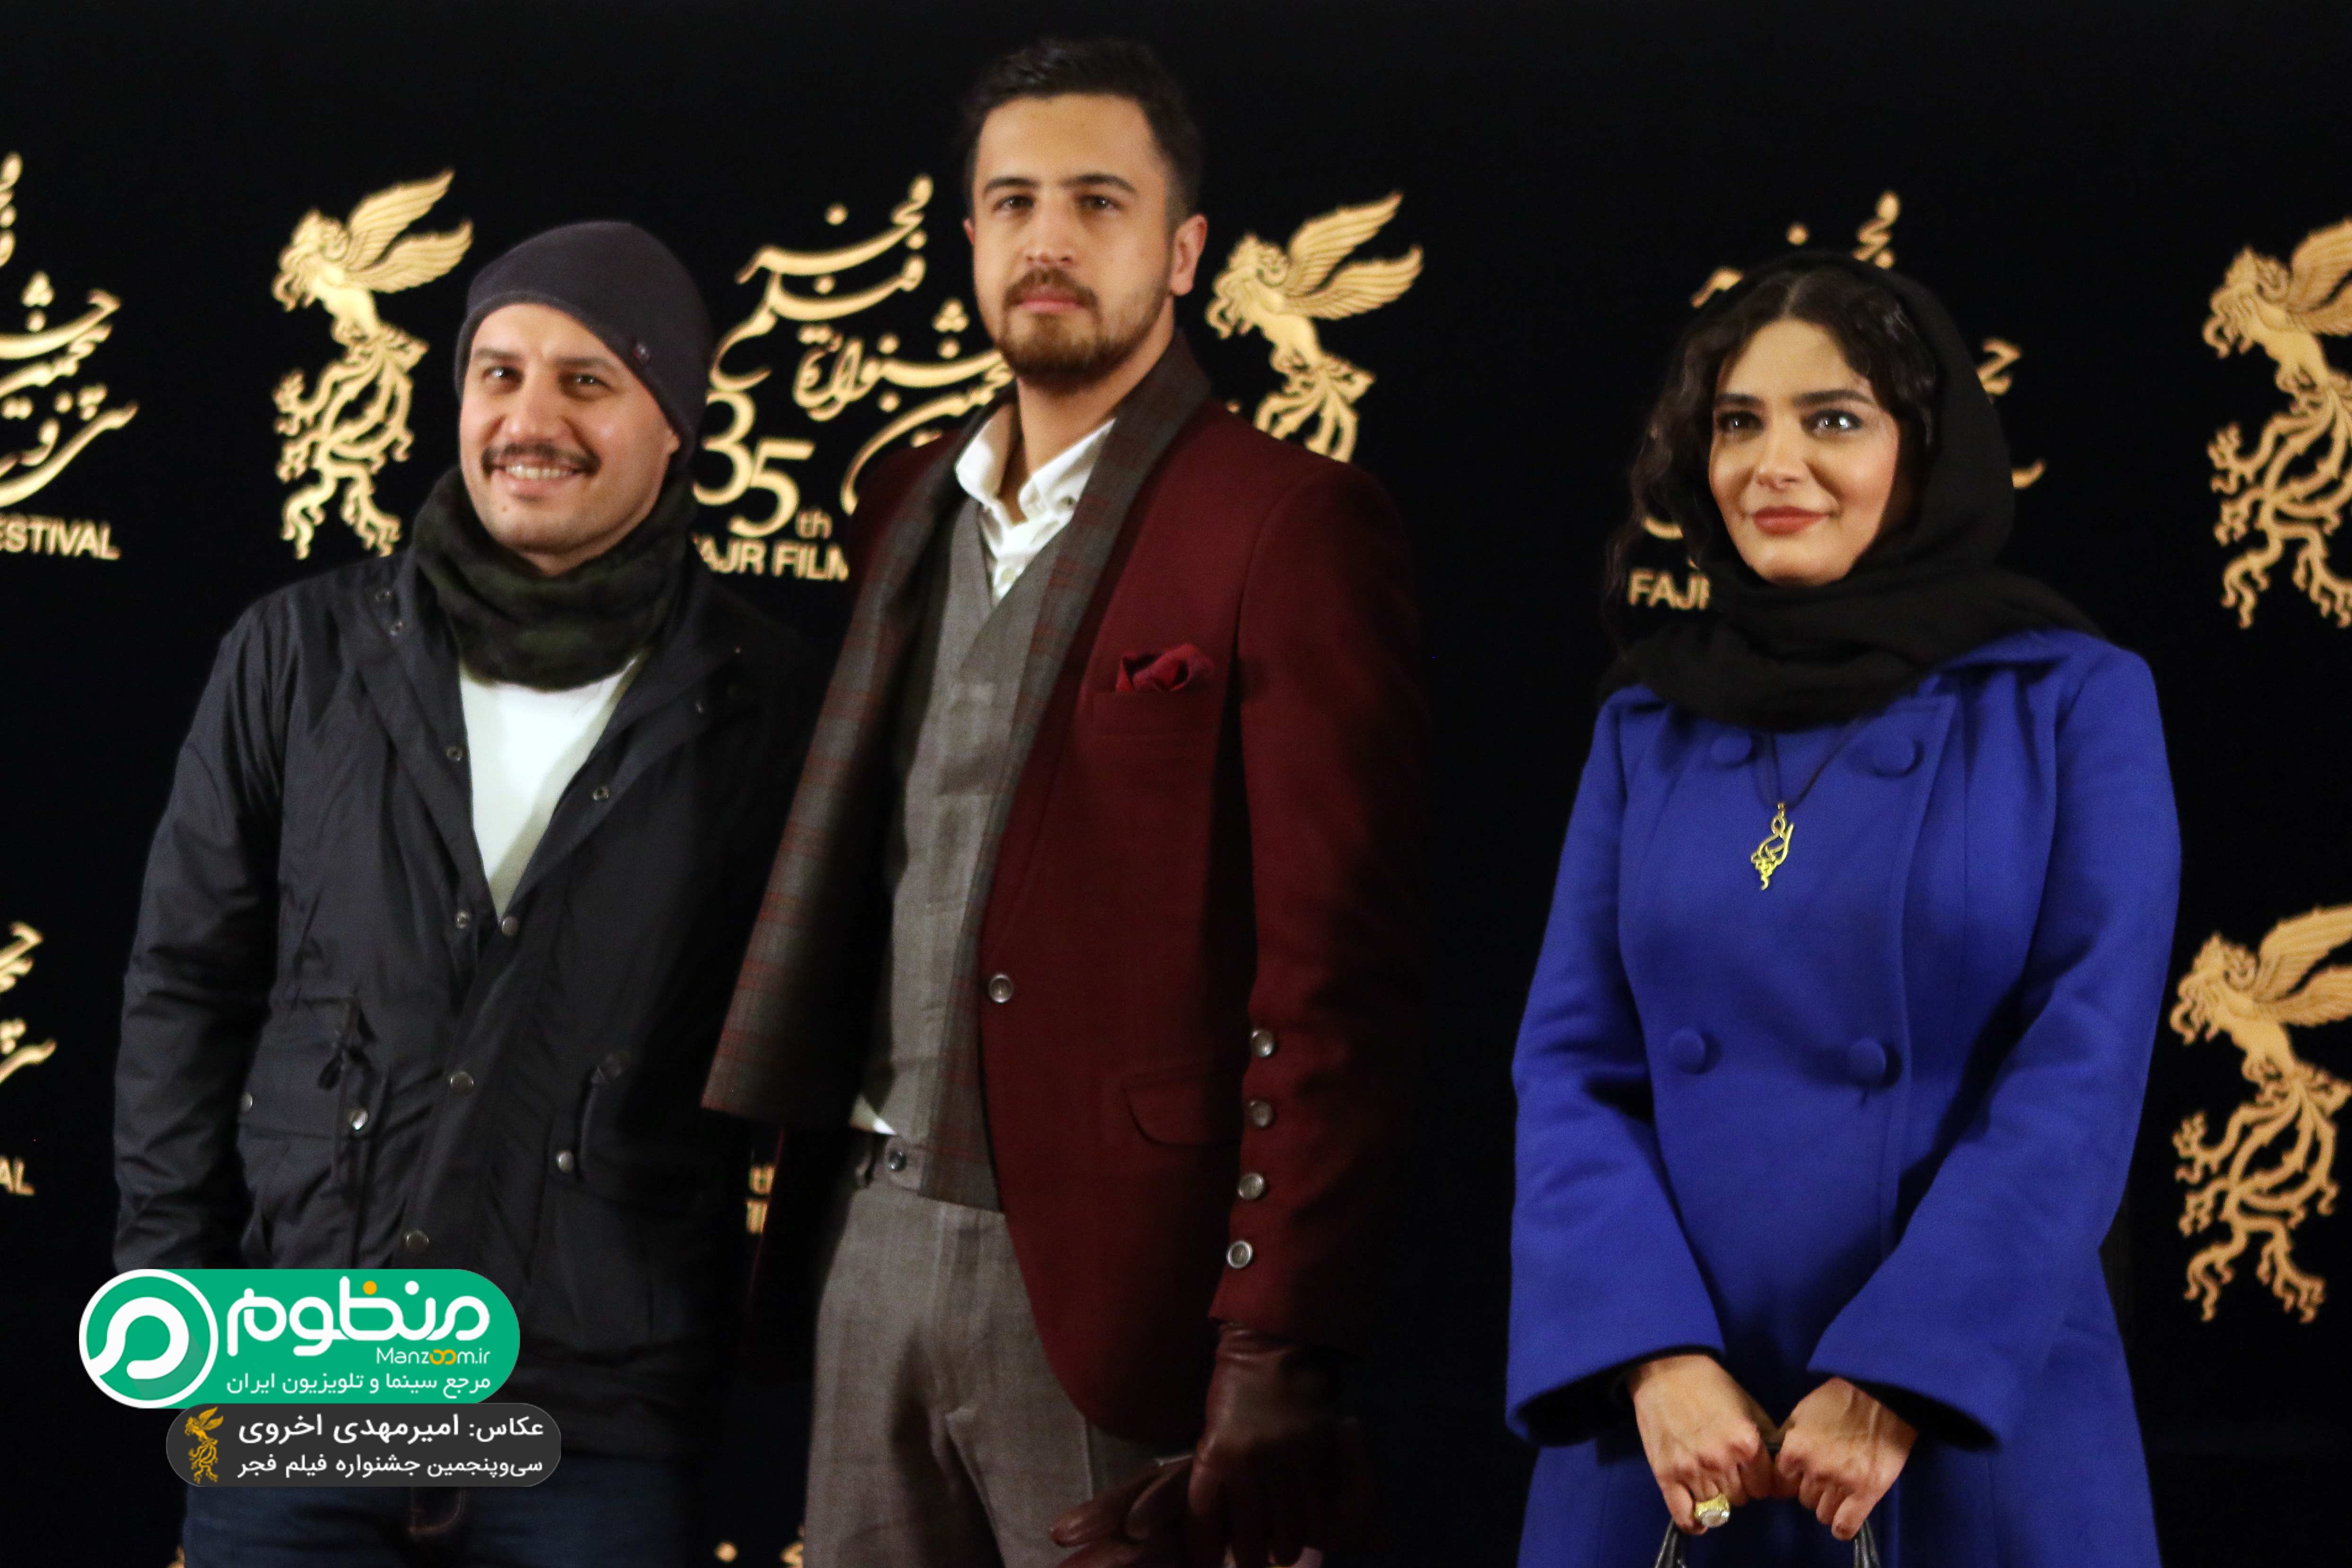 مهرداد صدیقیان در فرش قرمز فیلم سینمایی ماجرای نیمروز به همراه لیندا کیانی و جواد عزتی